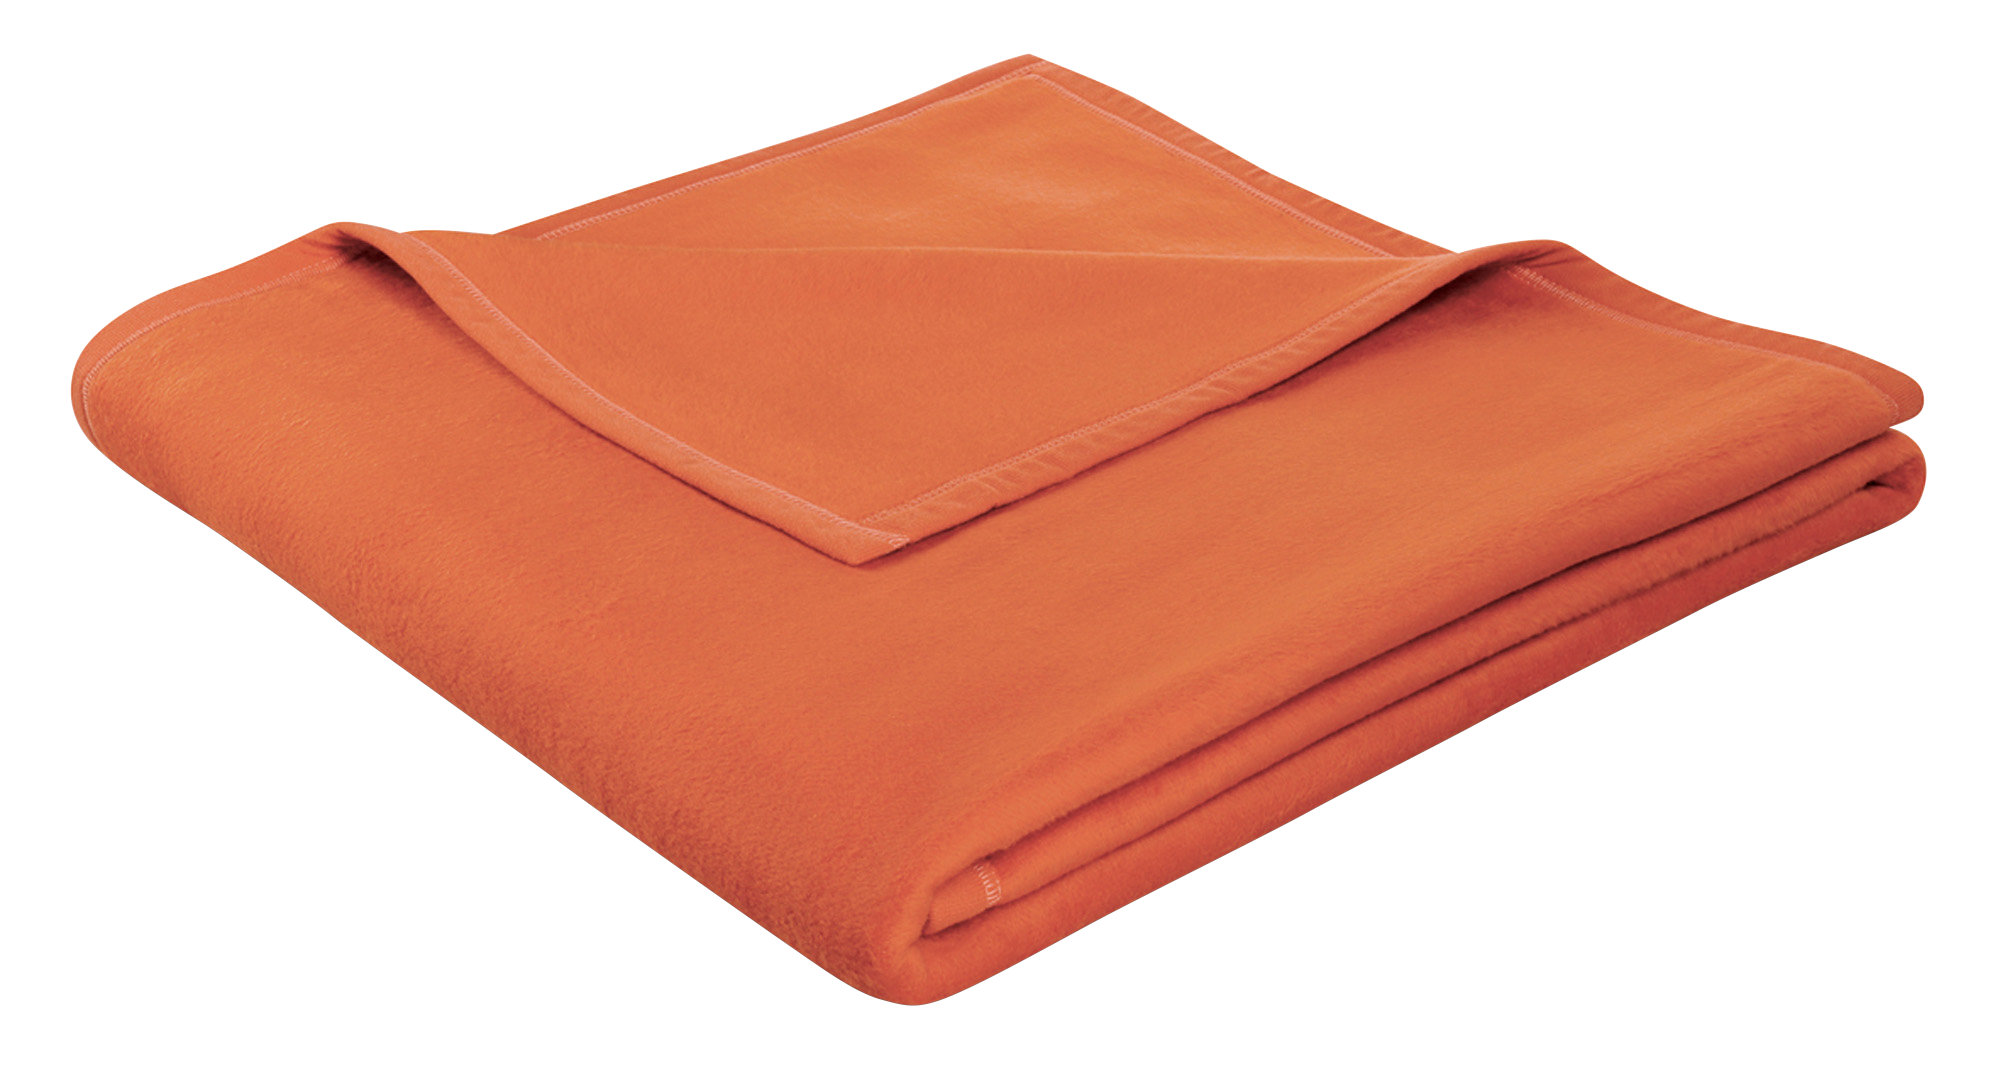 Biederlack Wohndecke Thermosoft 150x200 Cm orange online kaufen | eBay